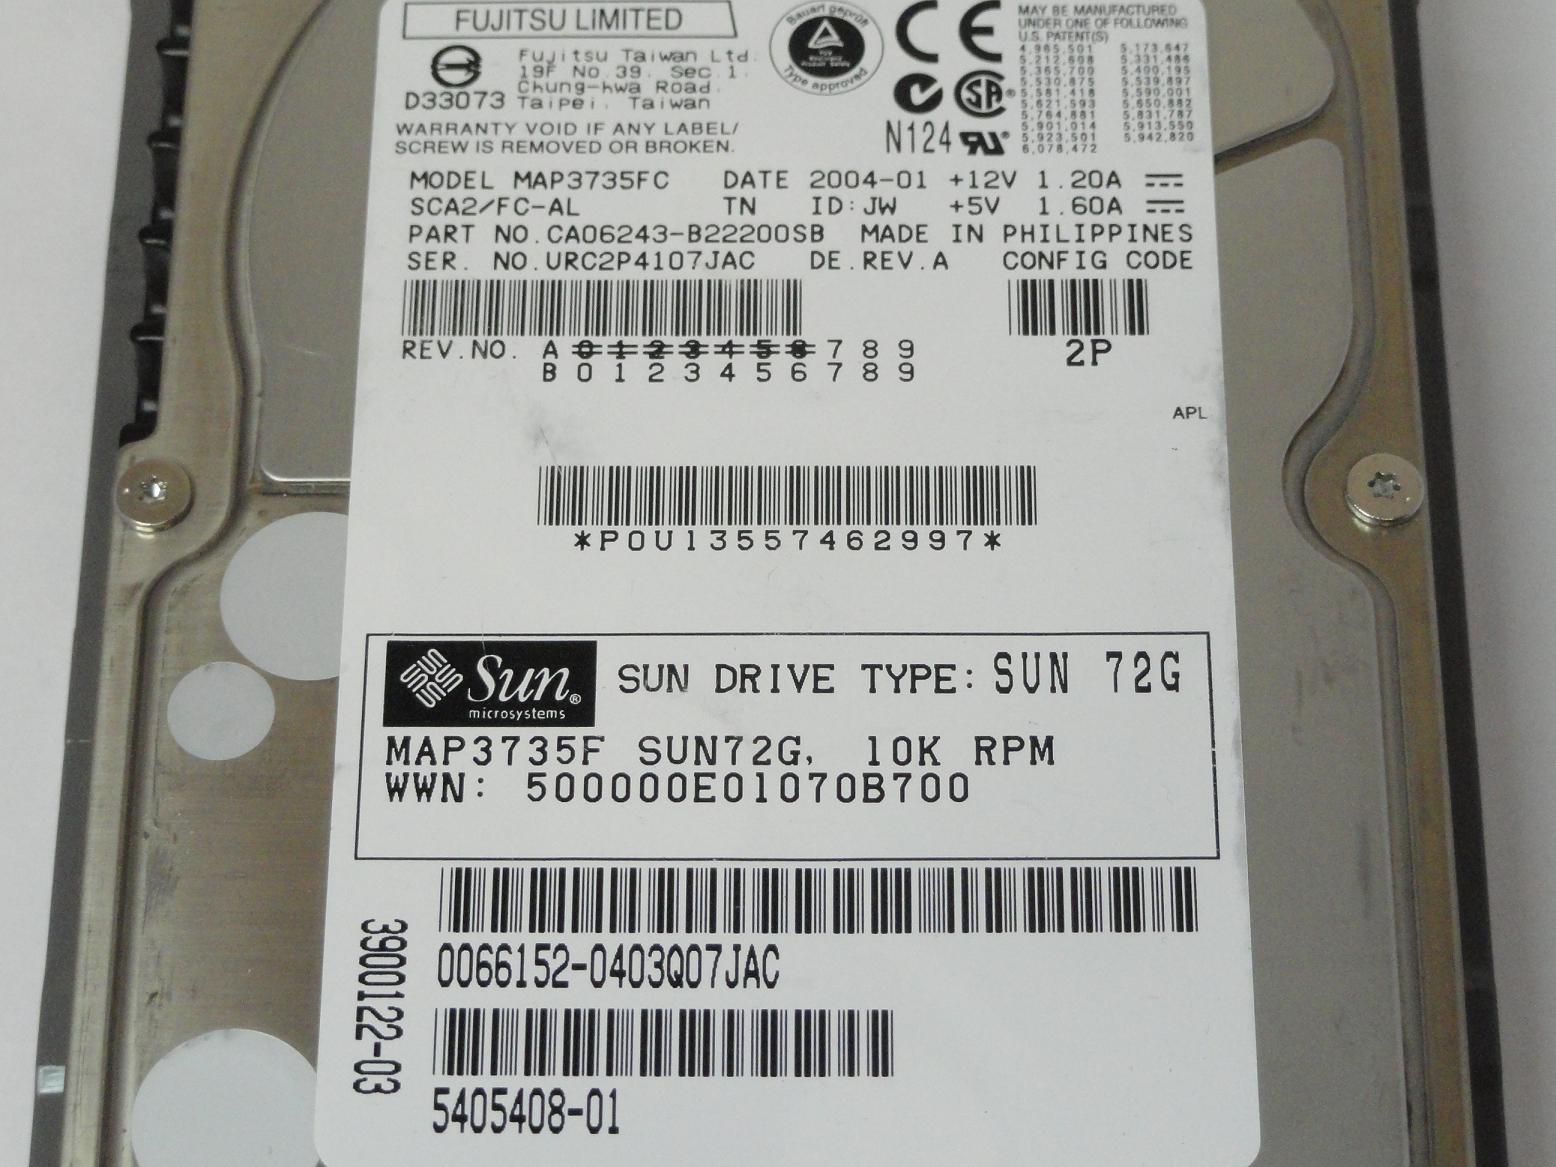 PR02698_CA06243-B22200SB_Fujitsu Sun 72GB Fibre Channel 10Krpm 3.5in HDD - Image4